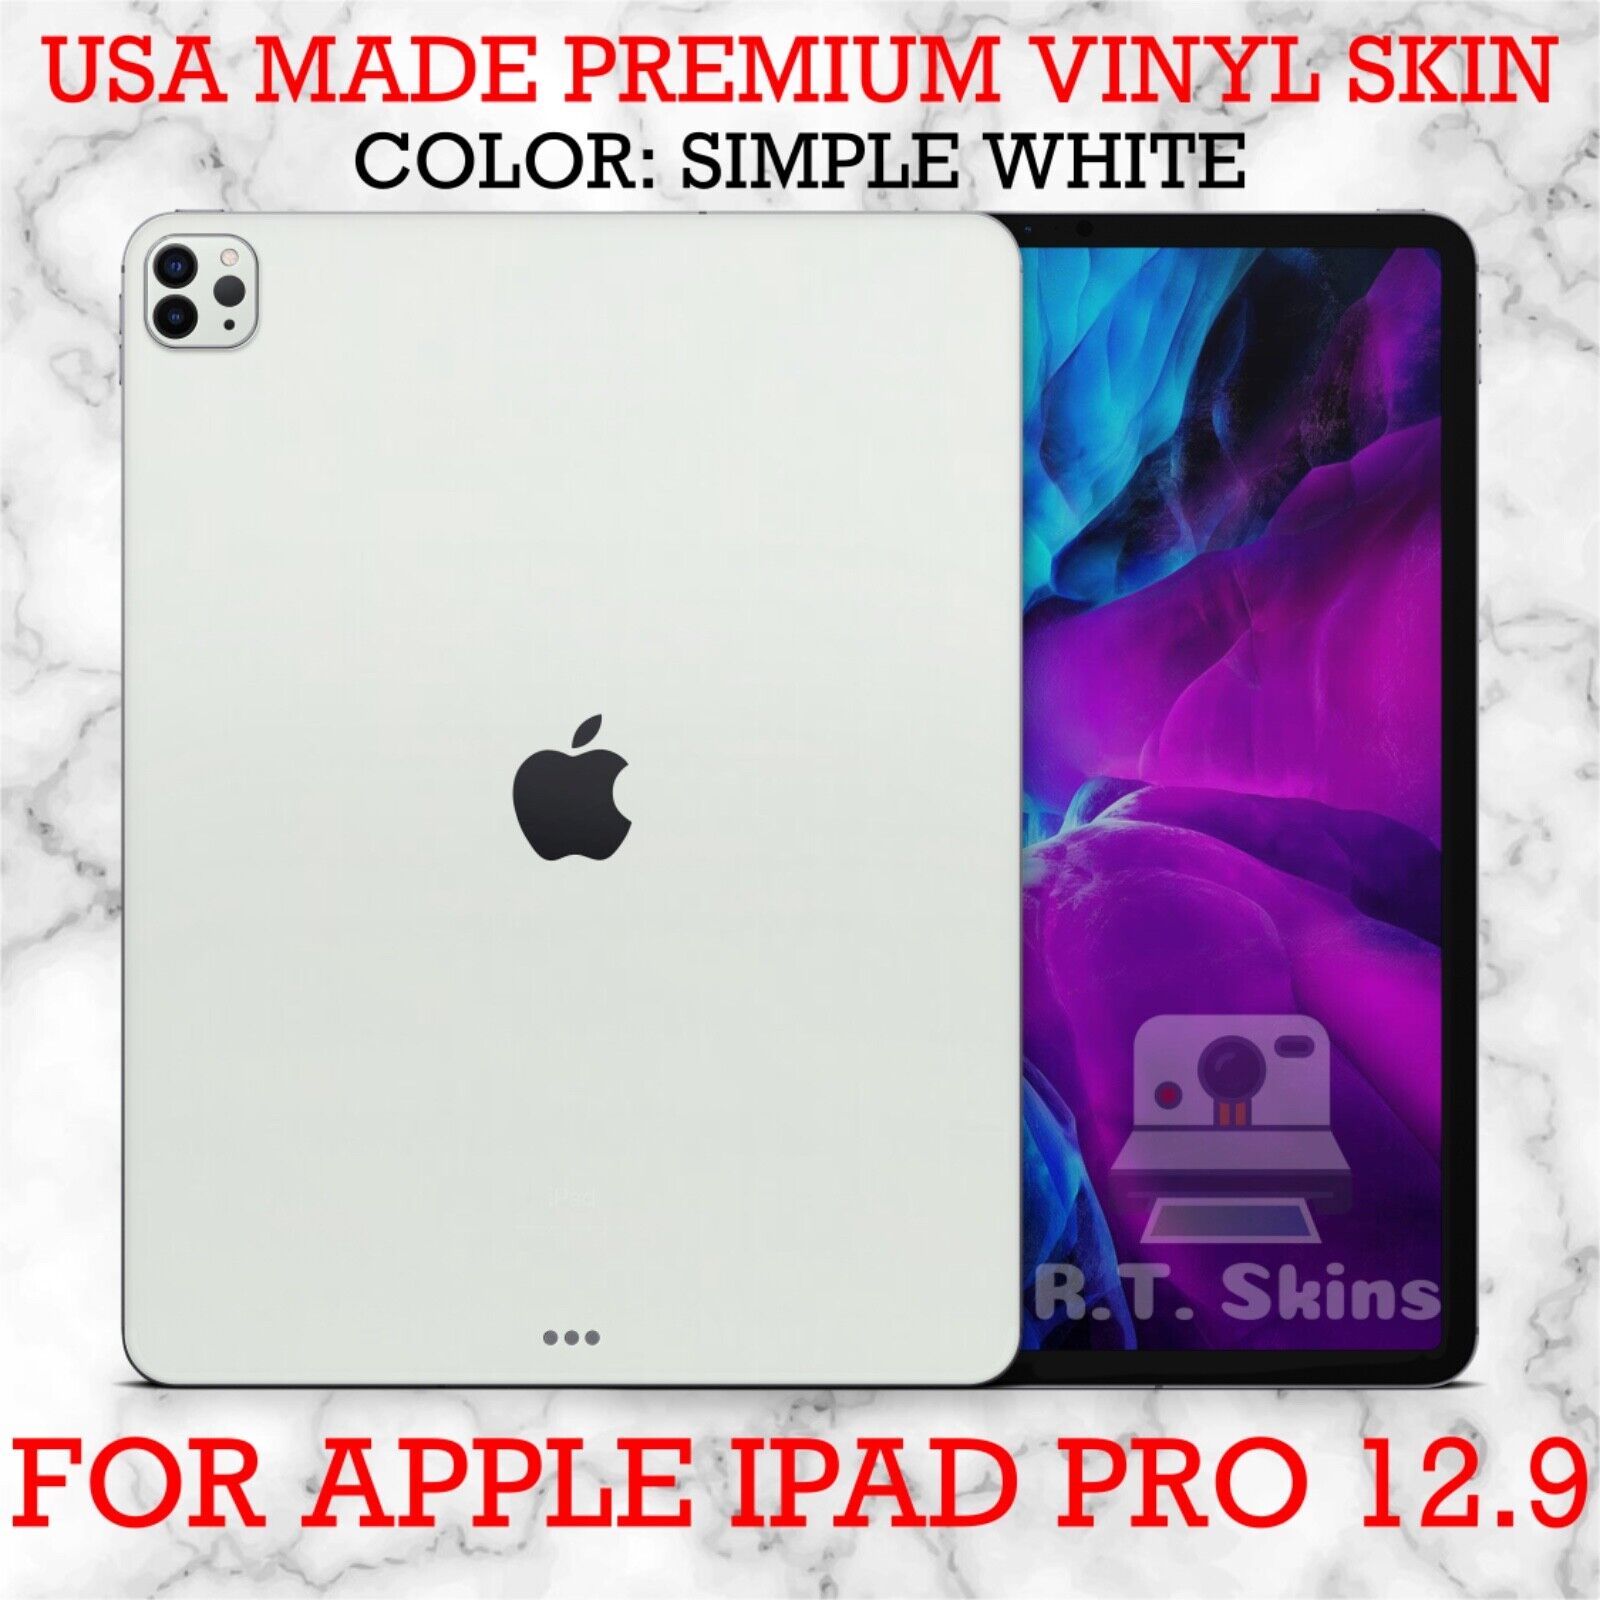 RT.SKINS - Simple White - Full Body Vinyl Skin for Apple iPad Pro 12.9 (2020)